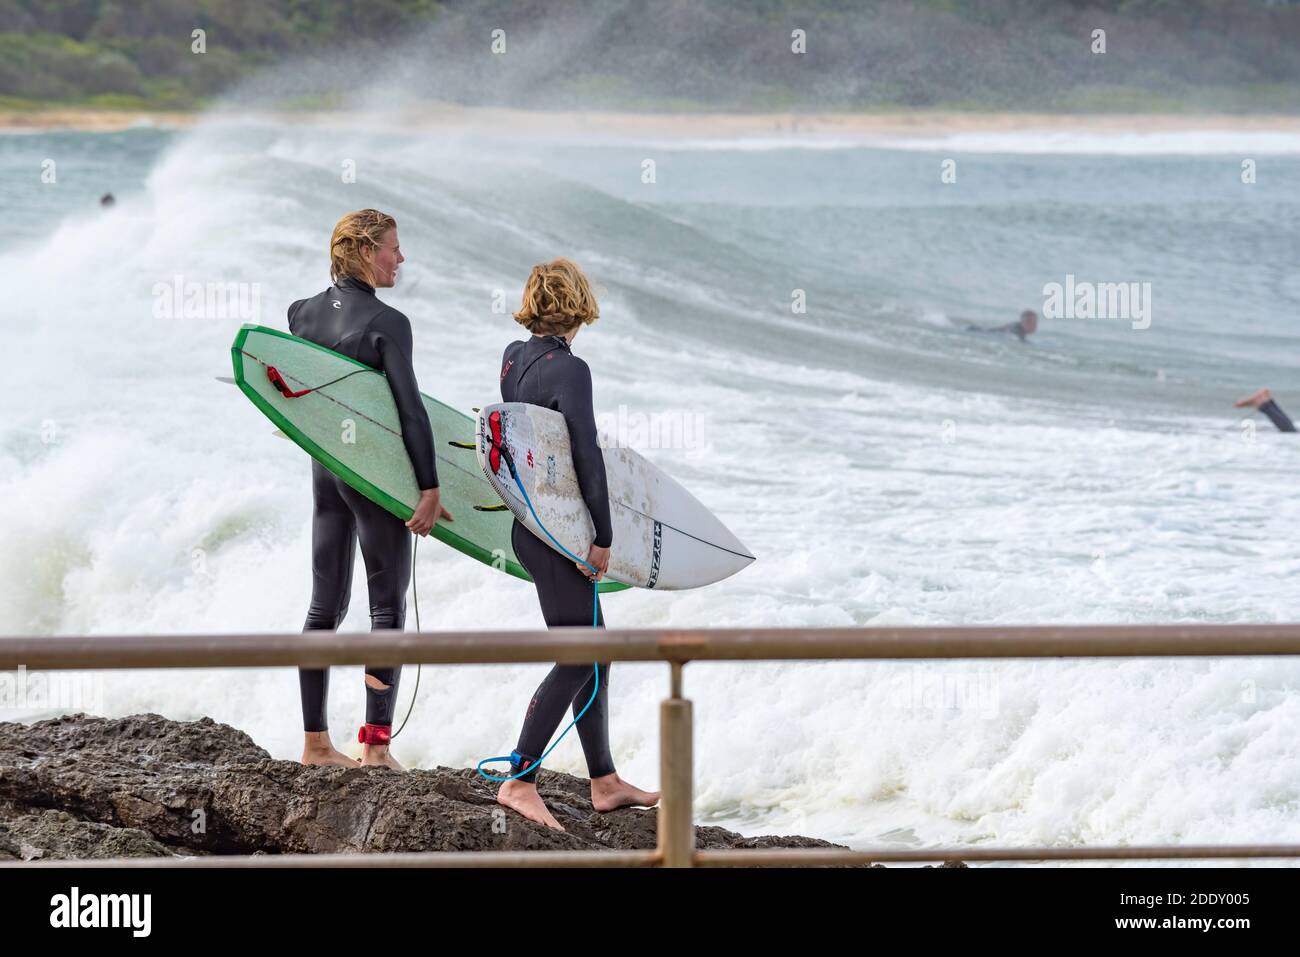 Deux jeunes cavaliers de planche de surf de sexe masculin regardent attentivement pendant qu'ils se préparent Pour sauter dans l'eau des rochers près de Black Head Beach Ocean pool en Australie Banque D'Images